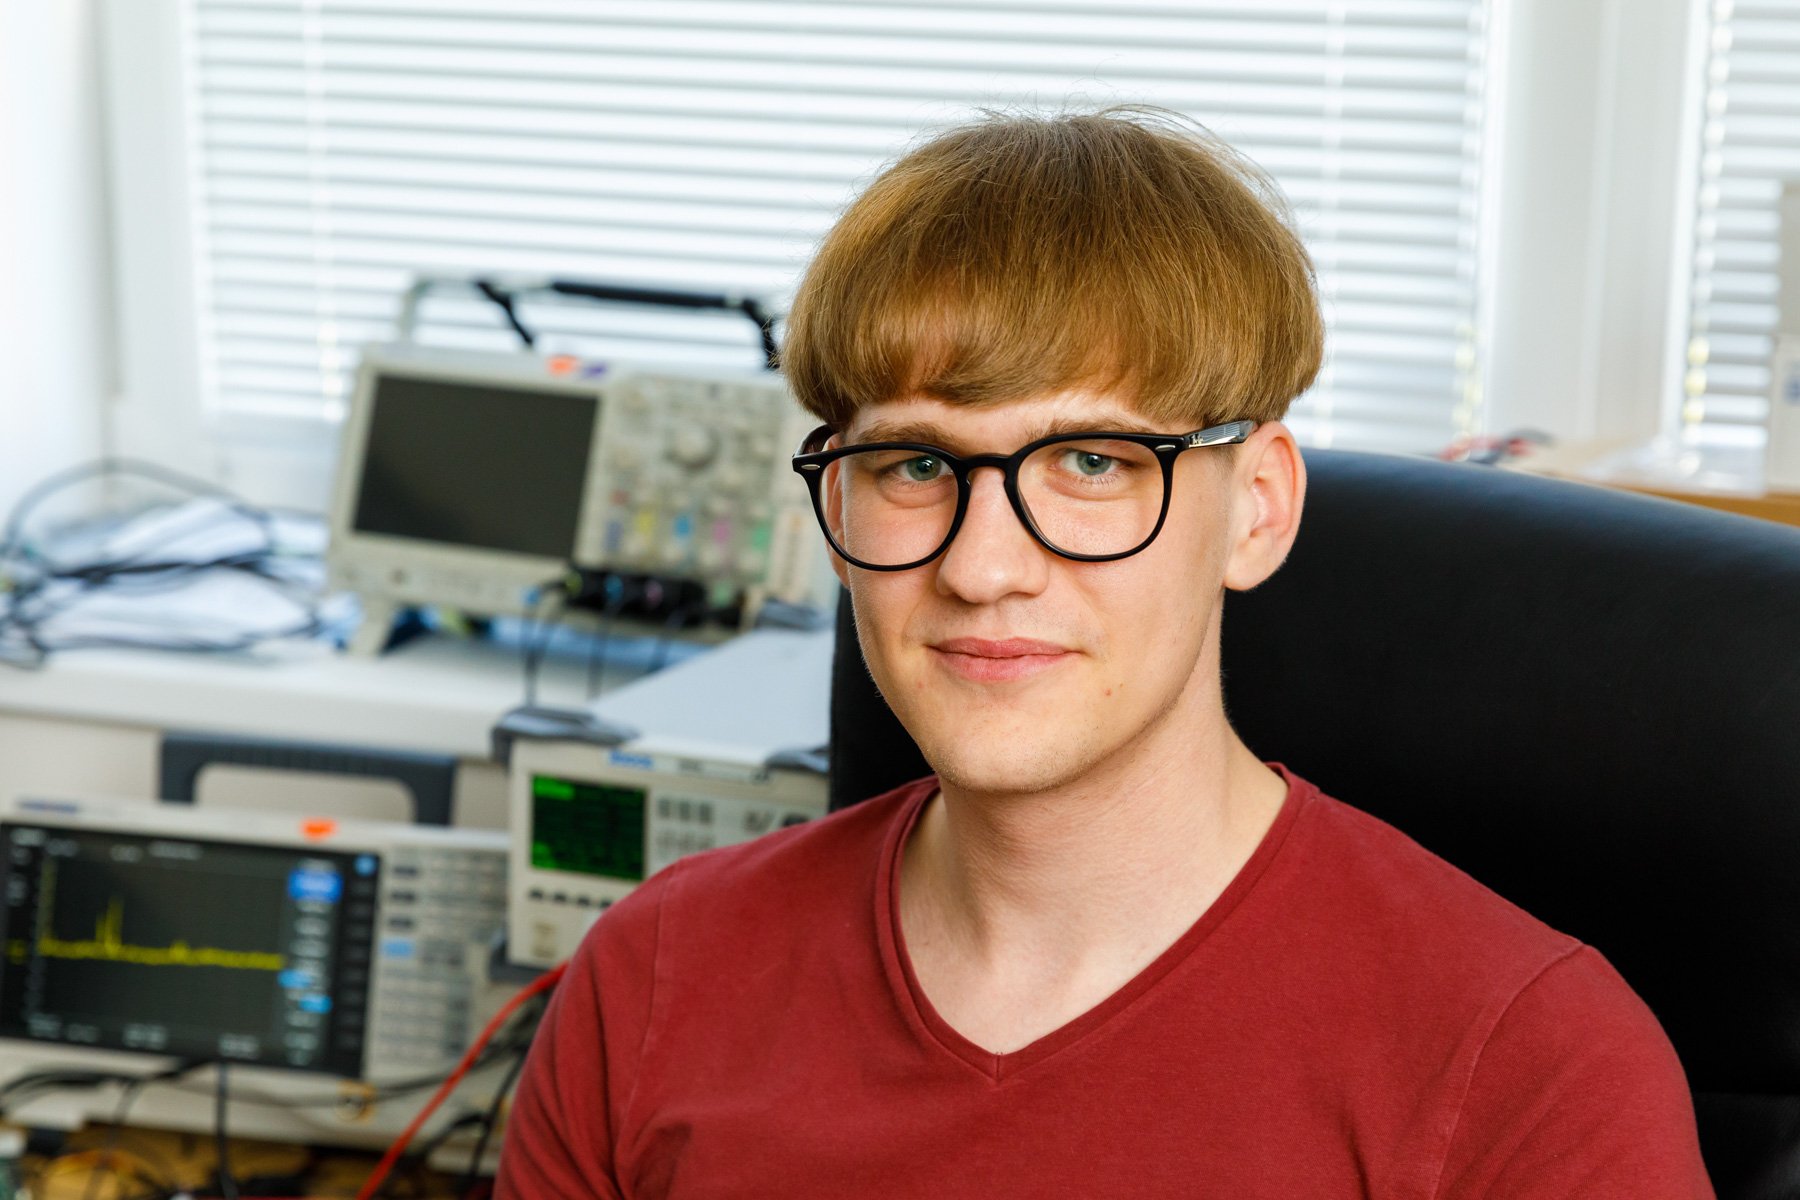 Meet Kaarel Vandler, Krakul’s electrical engineer